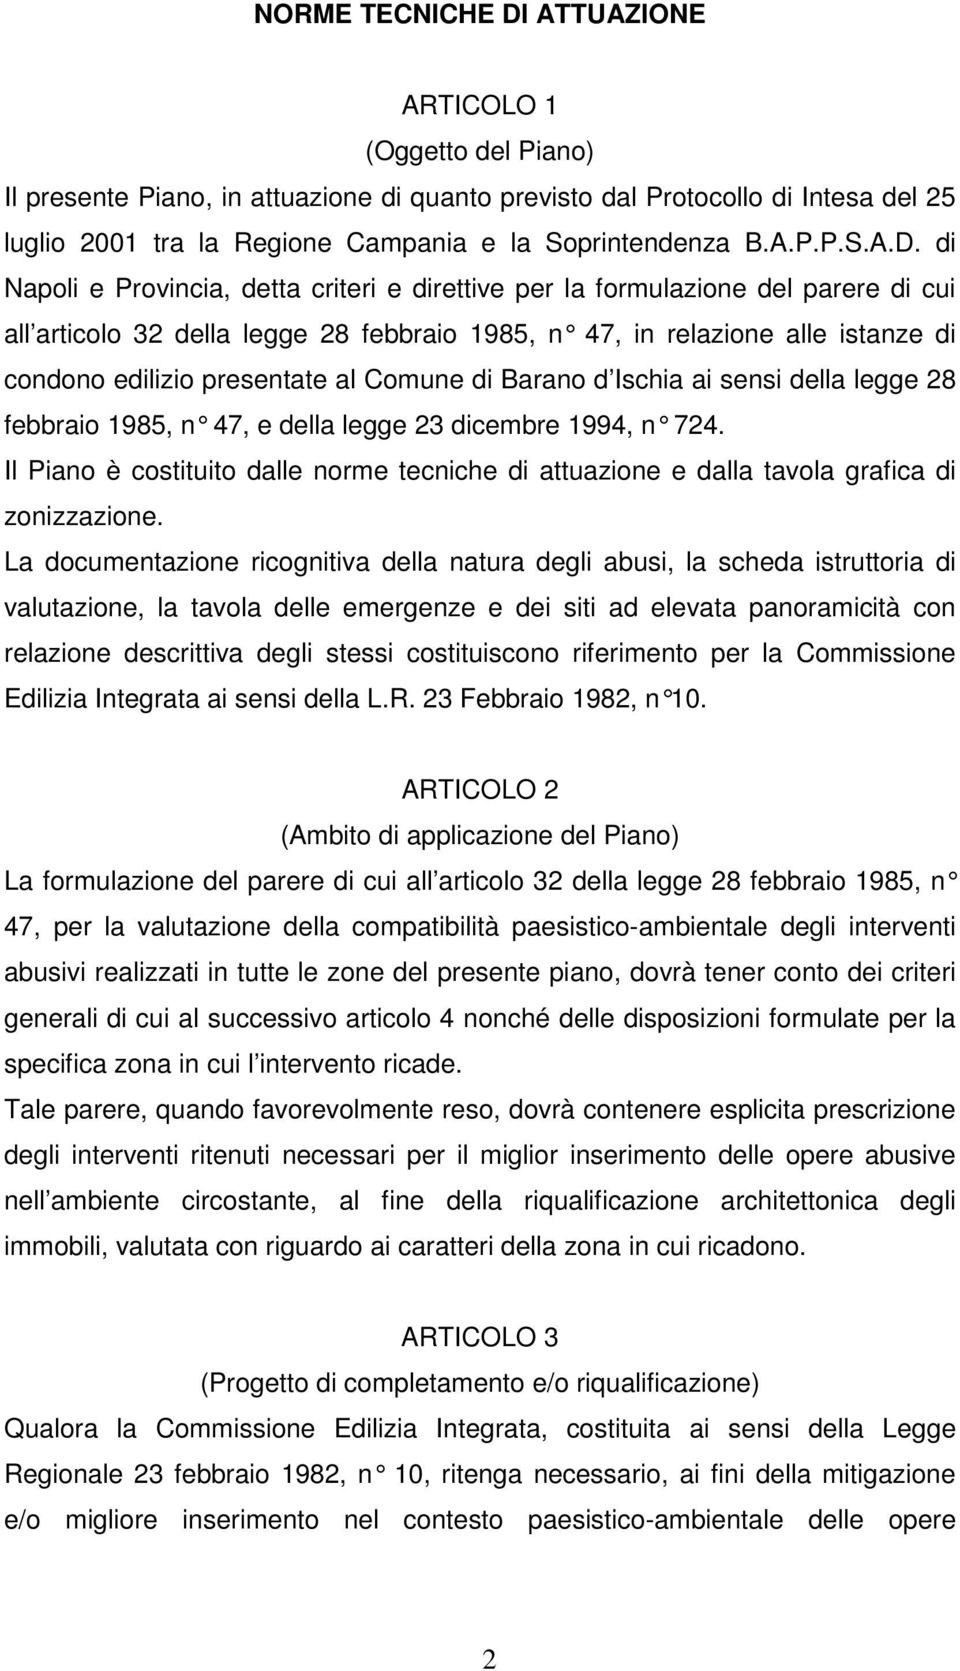 di Napoli e Provincia, detta criteri e direttive per la formulazione del parere di cui all articolo 32 della legge 28 febbraio 1985, n 47, in relazione alle istanze di condono edilizio presentate al